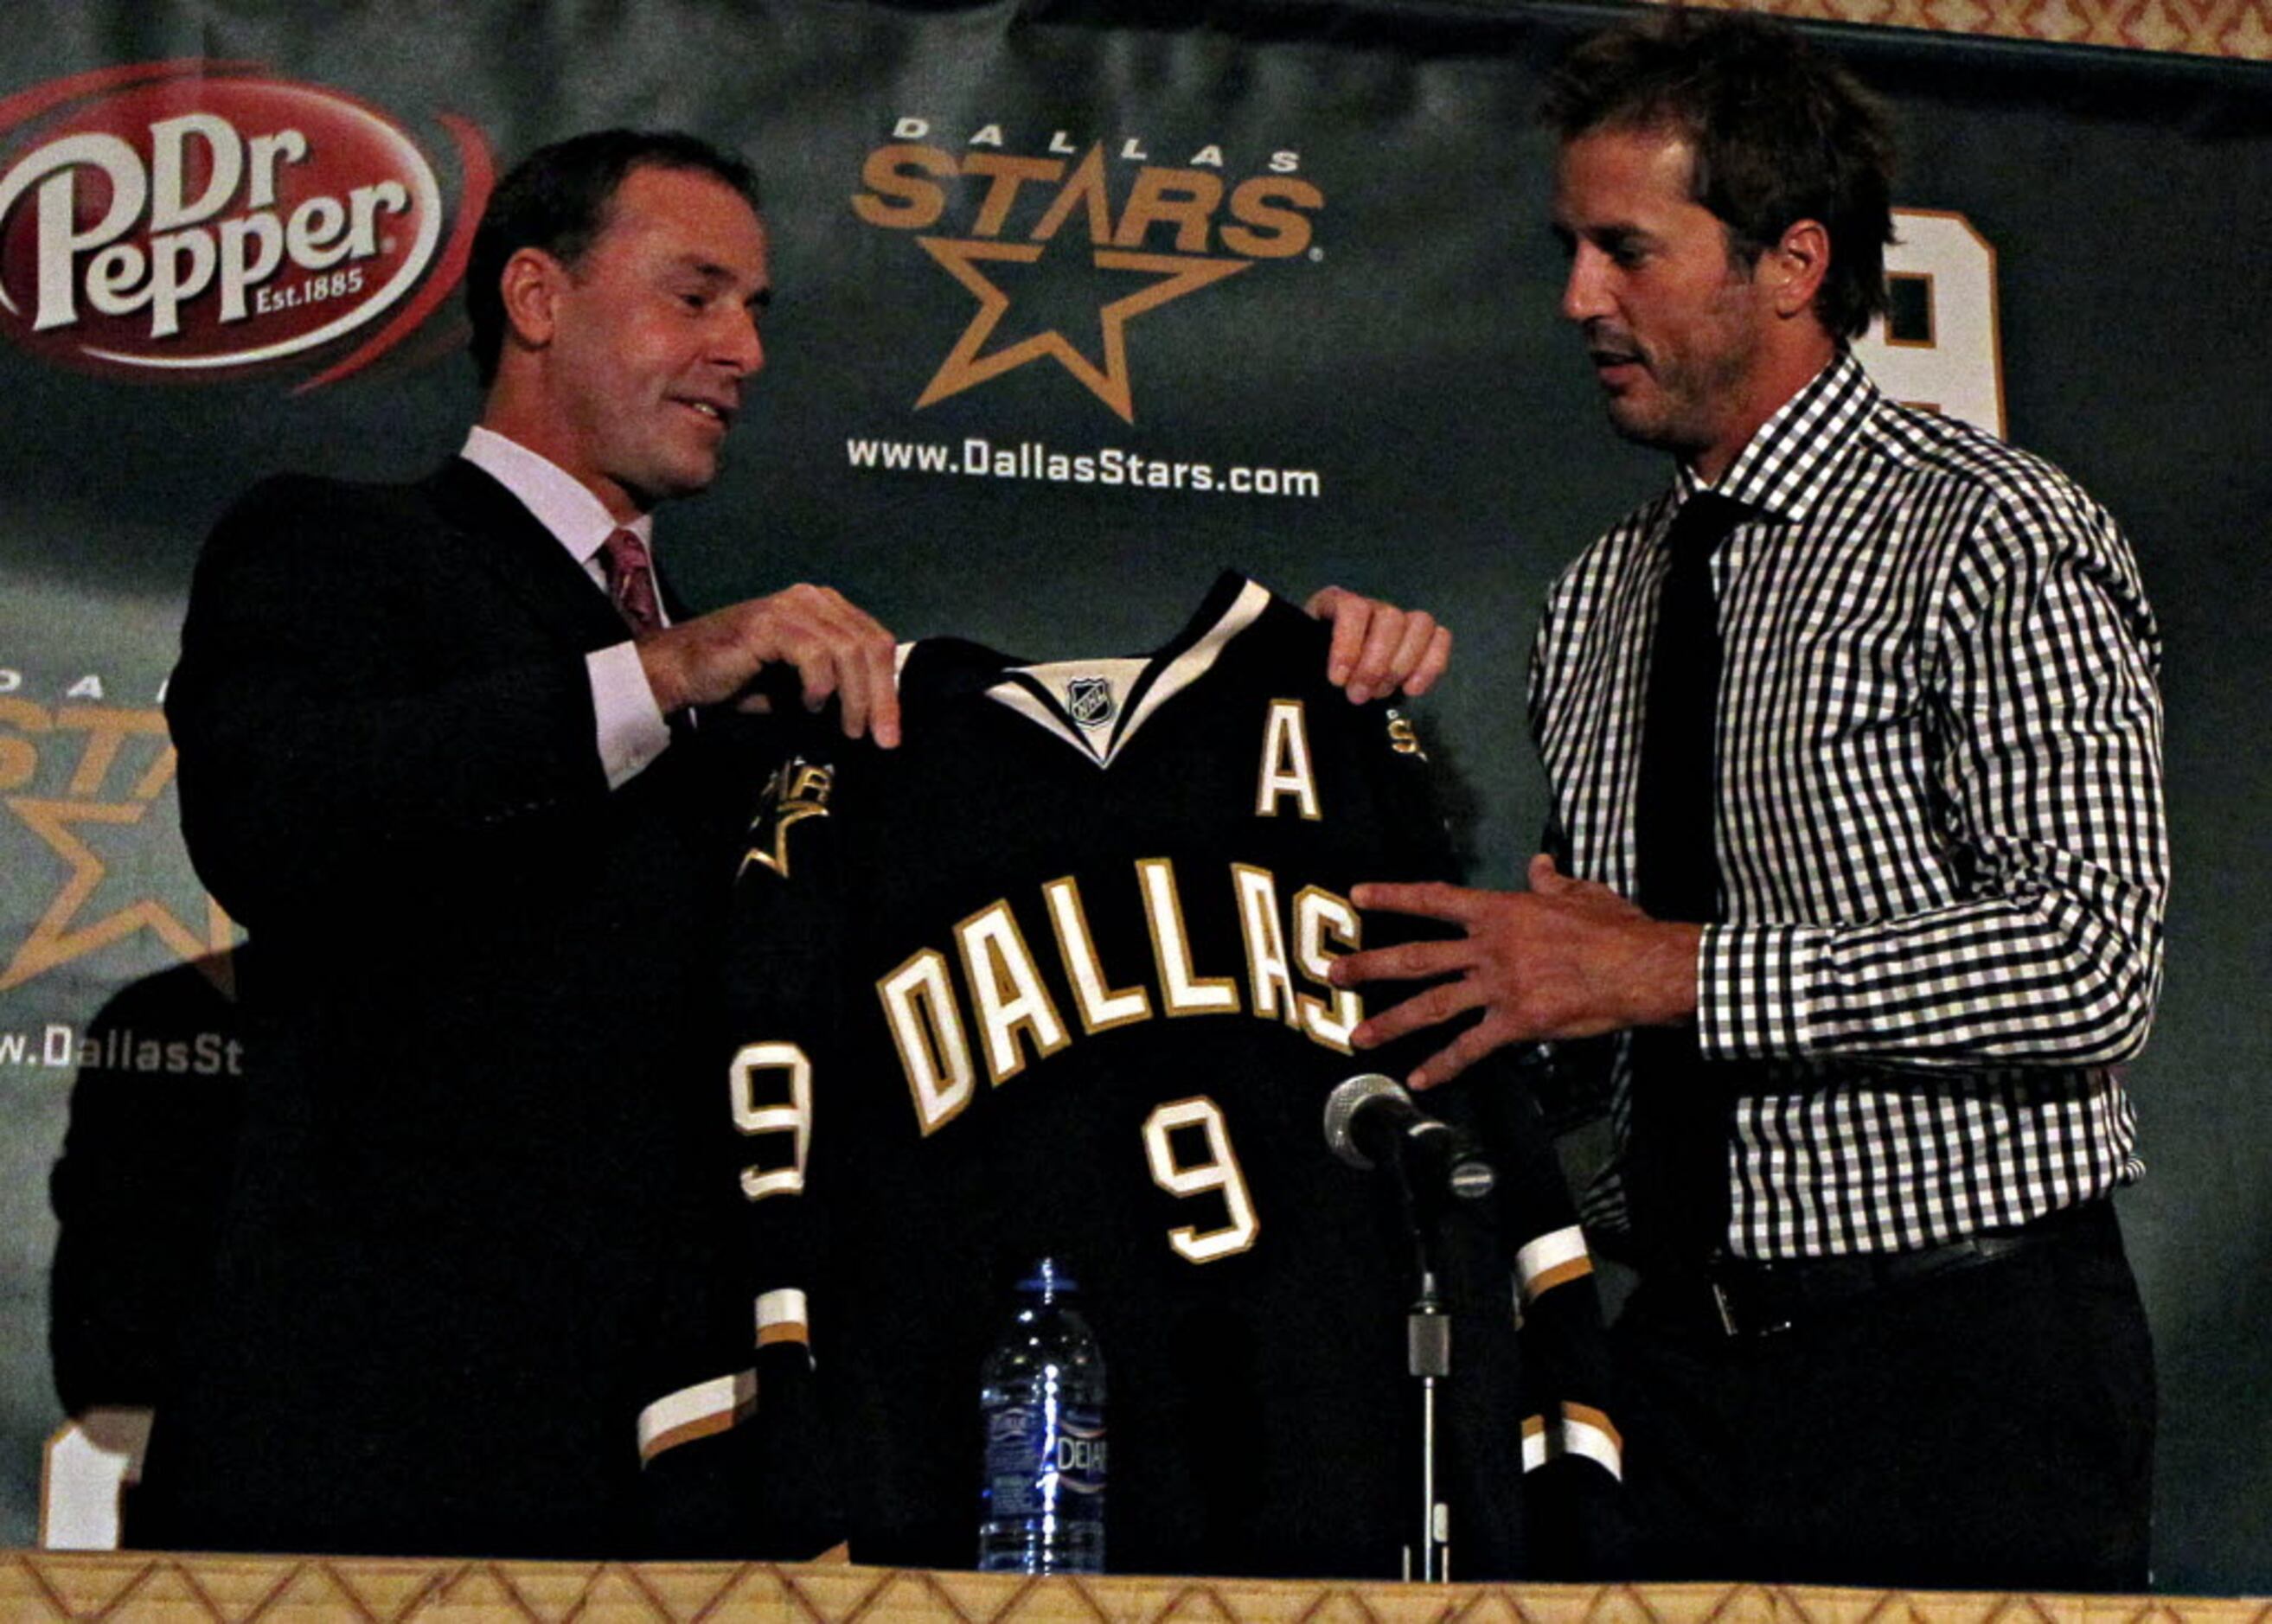 Dallas Stars unveil new logo and jerseys, will retire Modano's number - NBC  Sports